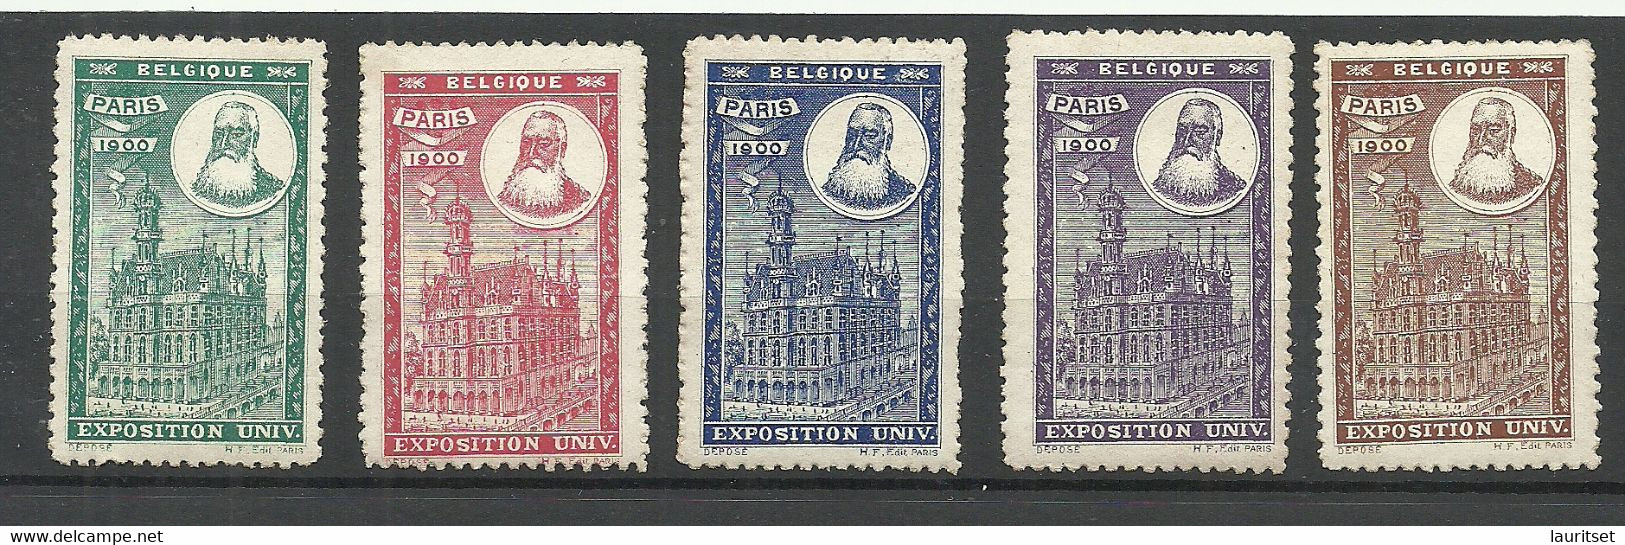 France 1900 EXPOSITION UNIVERSELLE Vignetten Poster Stamps Pavillon De Belgique Belgium * - 1900 – Pariis (France)